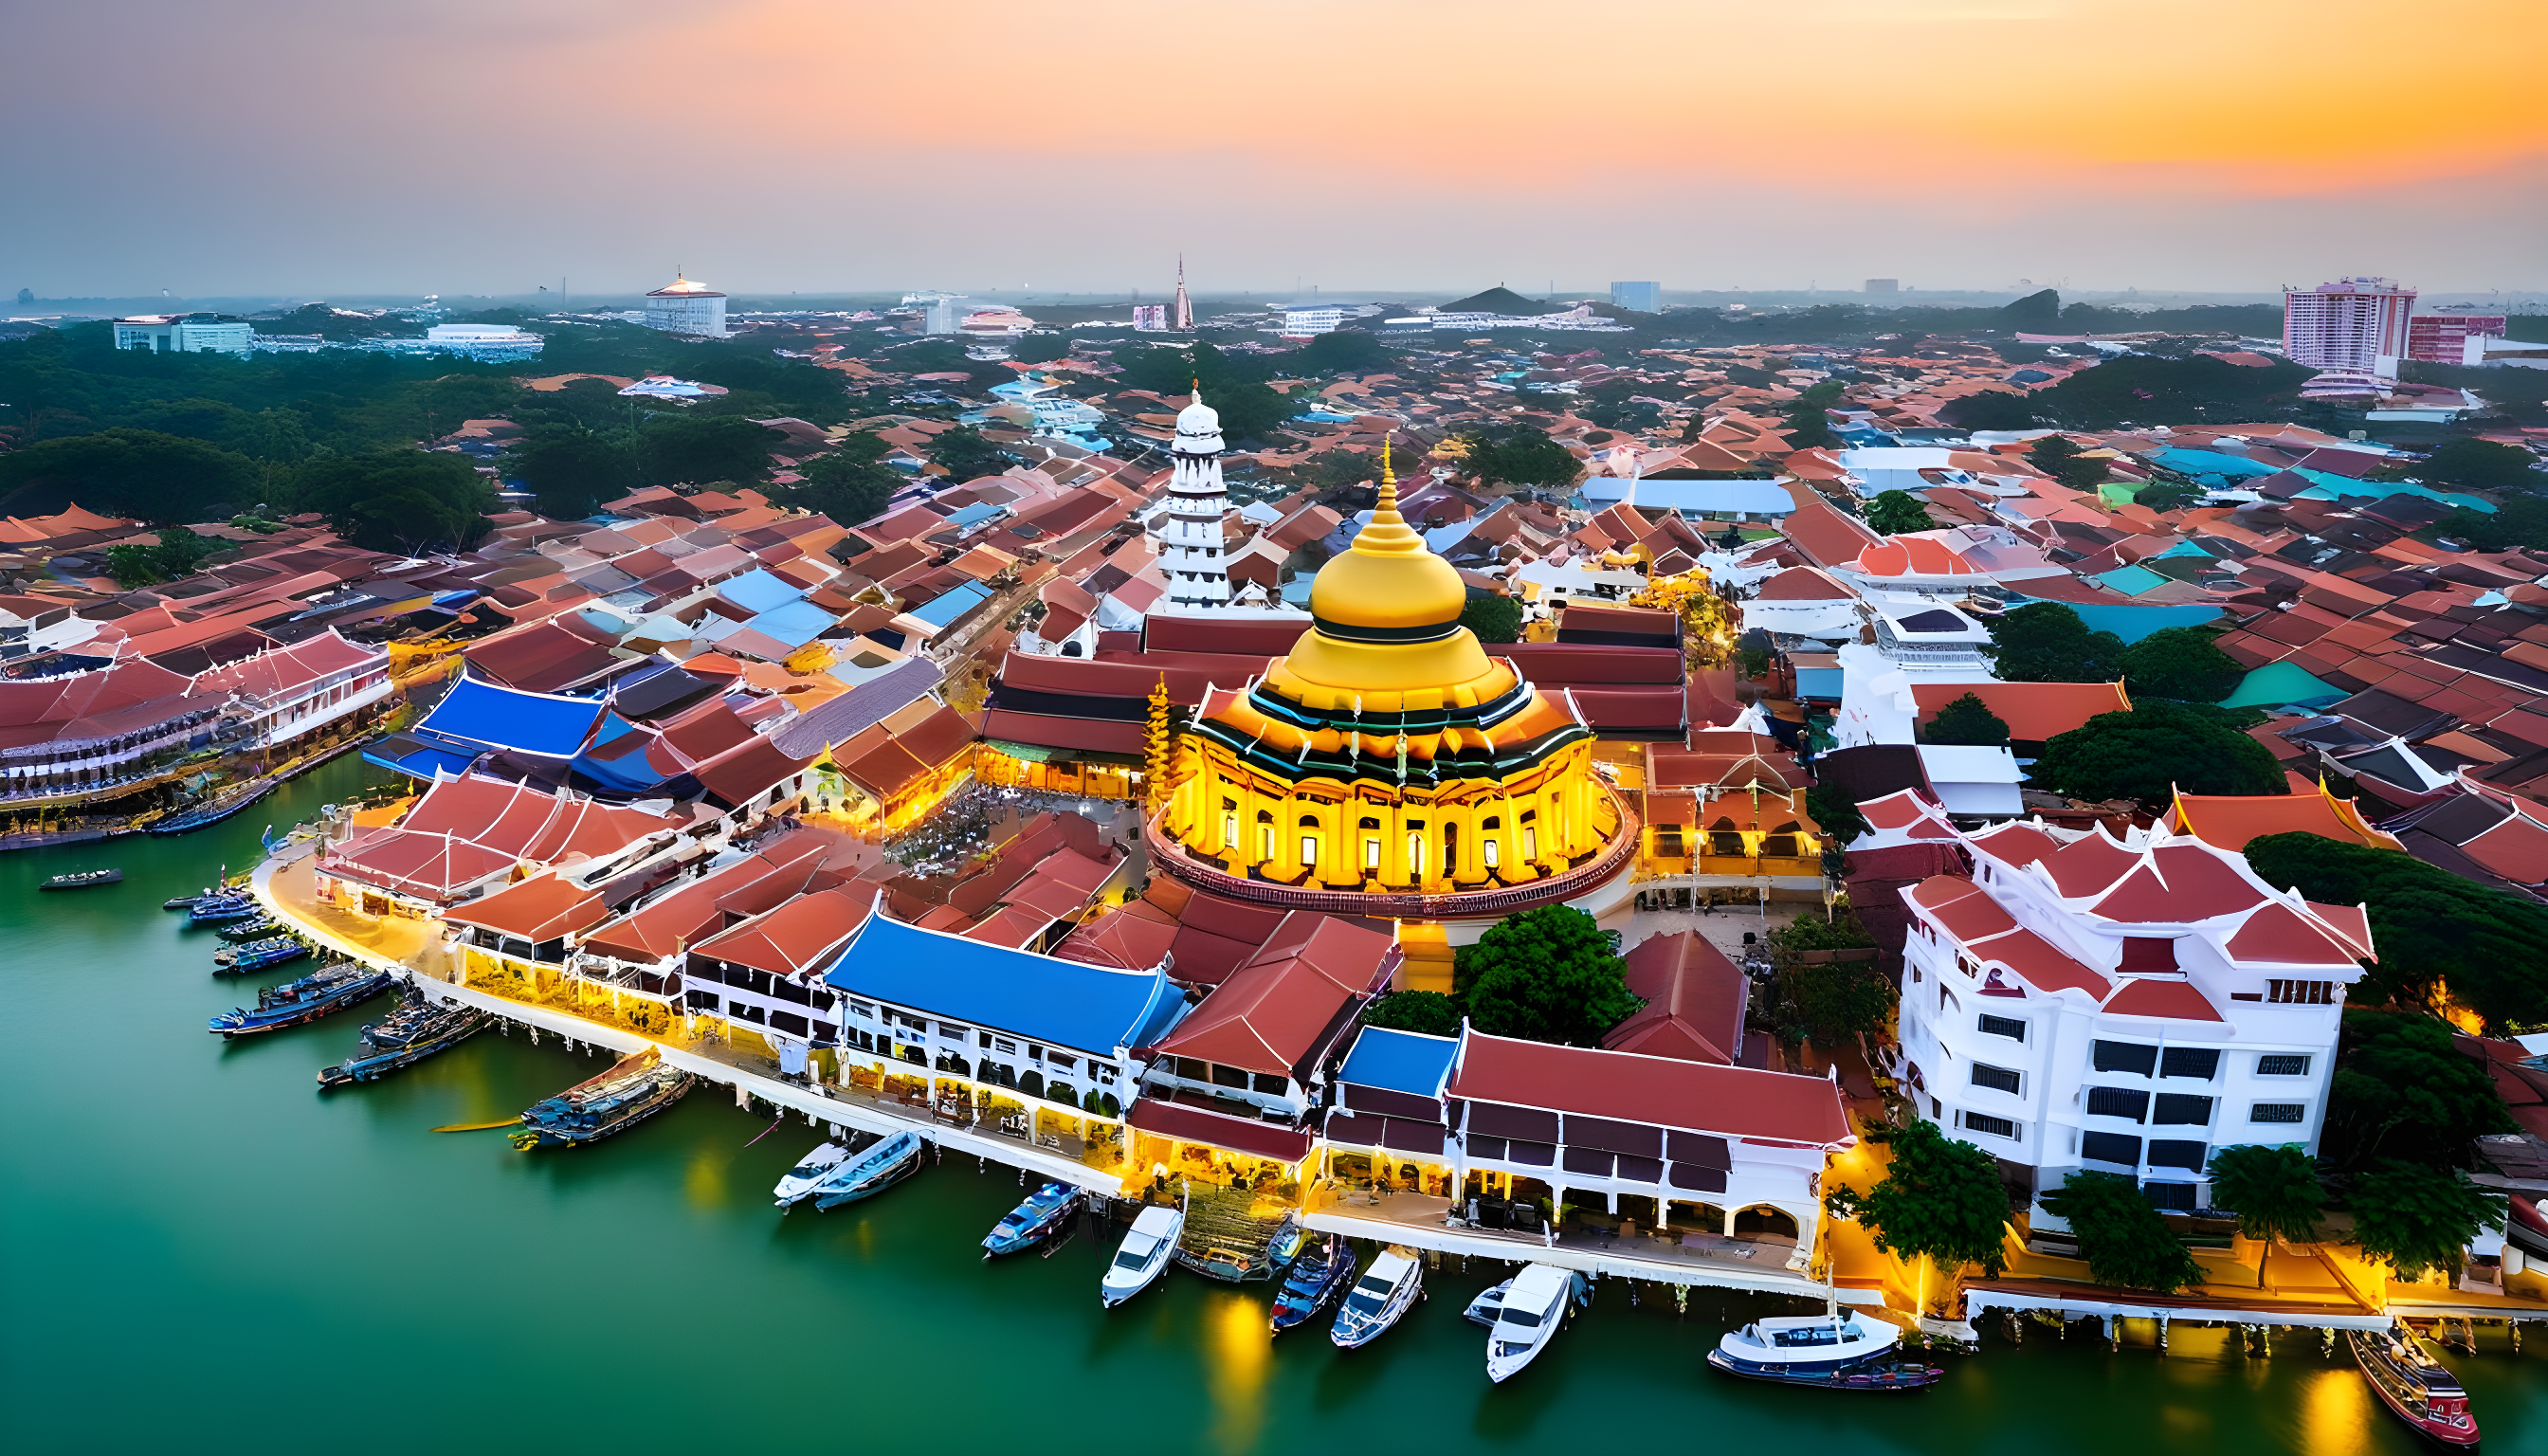 Melaka: The Start Of A Reset Beginning